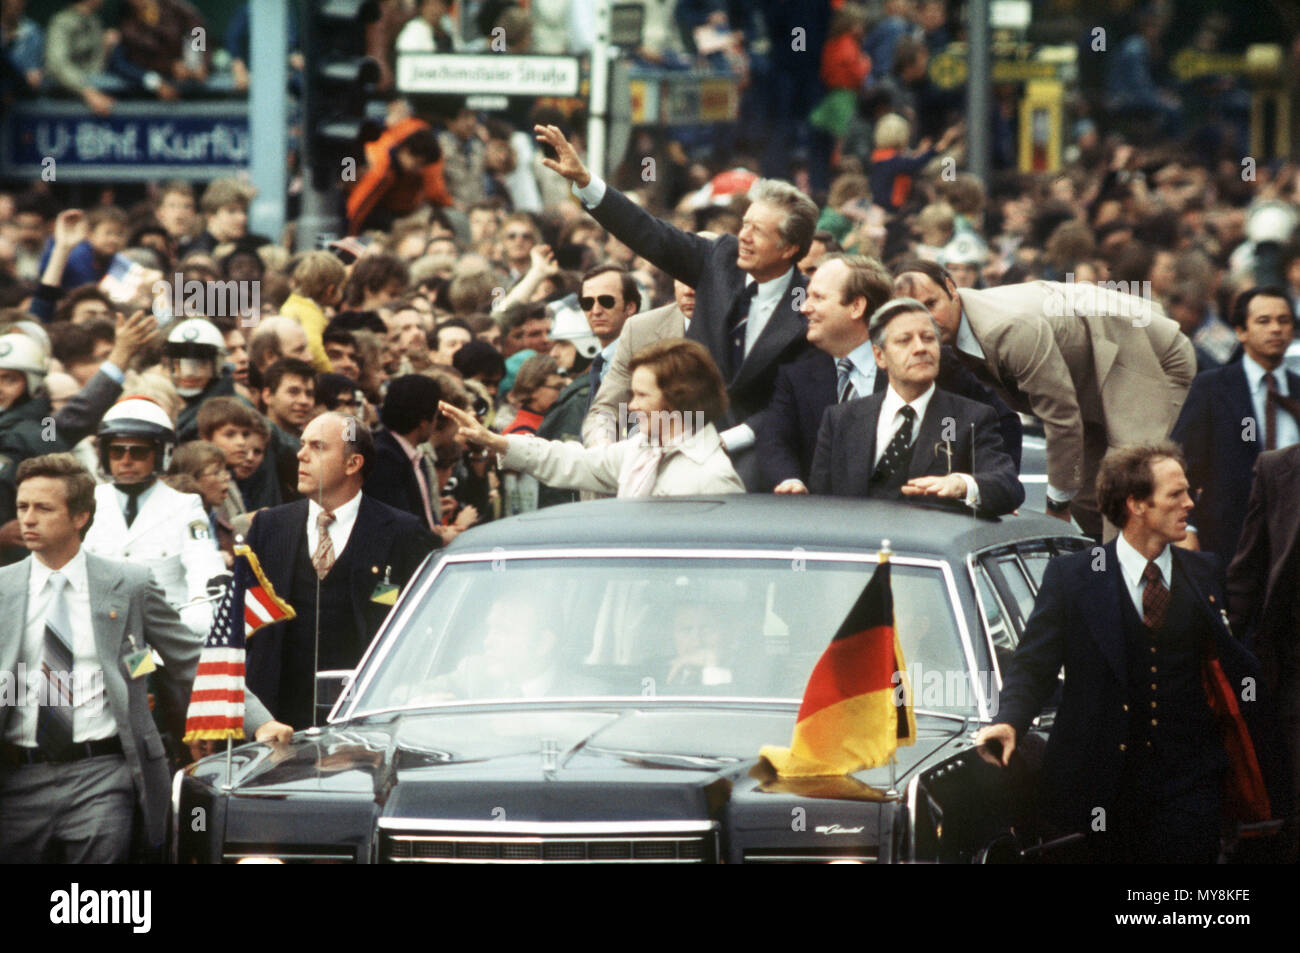 El presidente estadounidense Jimmy Carter (C arriba, con el brazo extendido), su esposa Rosalynn (debajo de él), Alcalde de Berlín Oeste Dietrich Stobbe (R junto a Carter), y el canciller alemán Helmut Schmidt (R junto a Stobbe) conduciendo a través de Berlín en un coche abierto el 15 de julio de 1978. El presidente estadounidense Jimmy Carter llegó en la tarde del 15 de julio de 1978, para una visita de 4 horas en Berlín. Alrededor de 150.000 berlineses Kurfuerstendamm forrado para ver al Presidente de los Estados Unidos. Uso | en todo el mundo Foto de stock